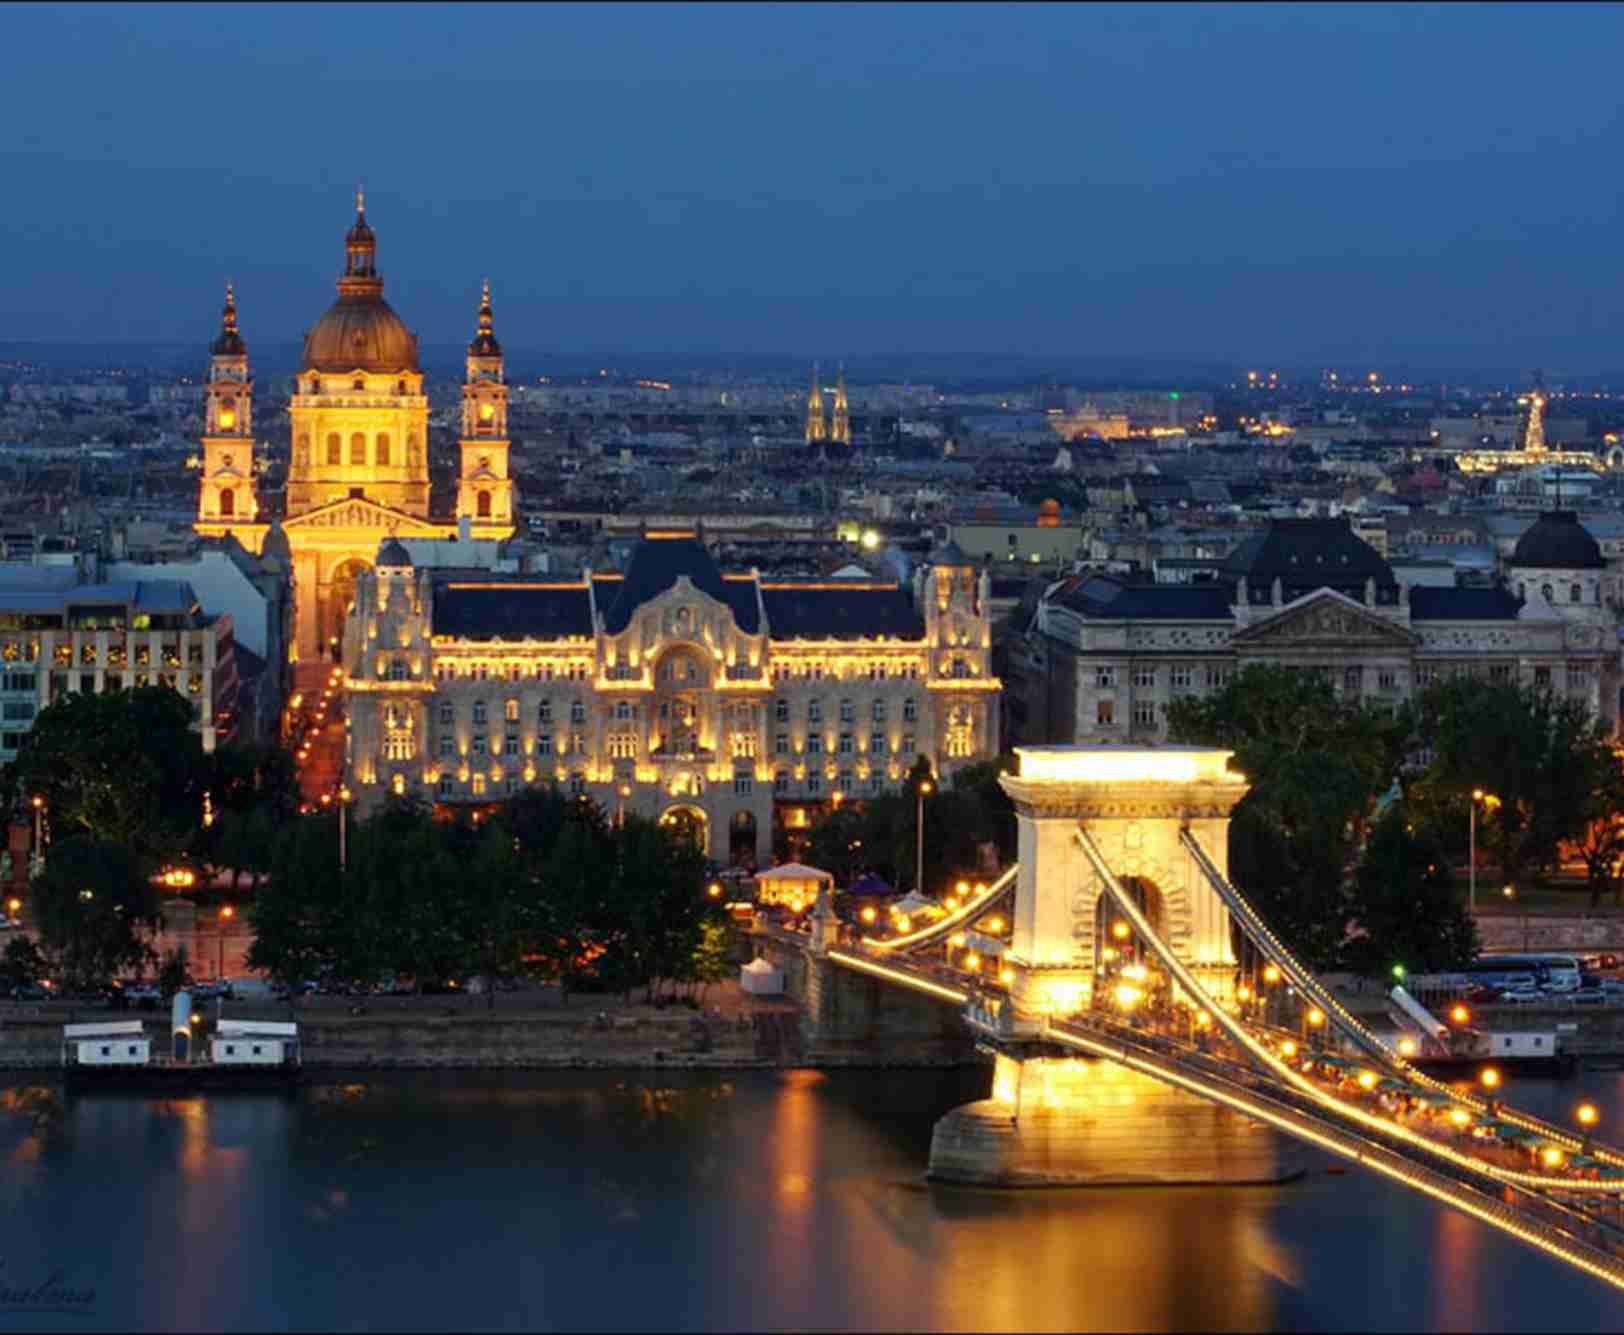 Вена музыкальная столица Европы